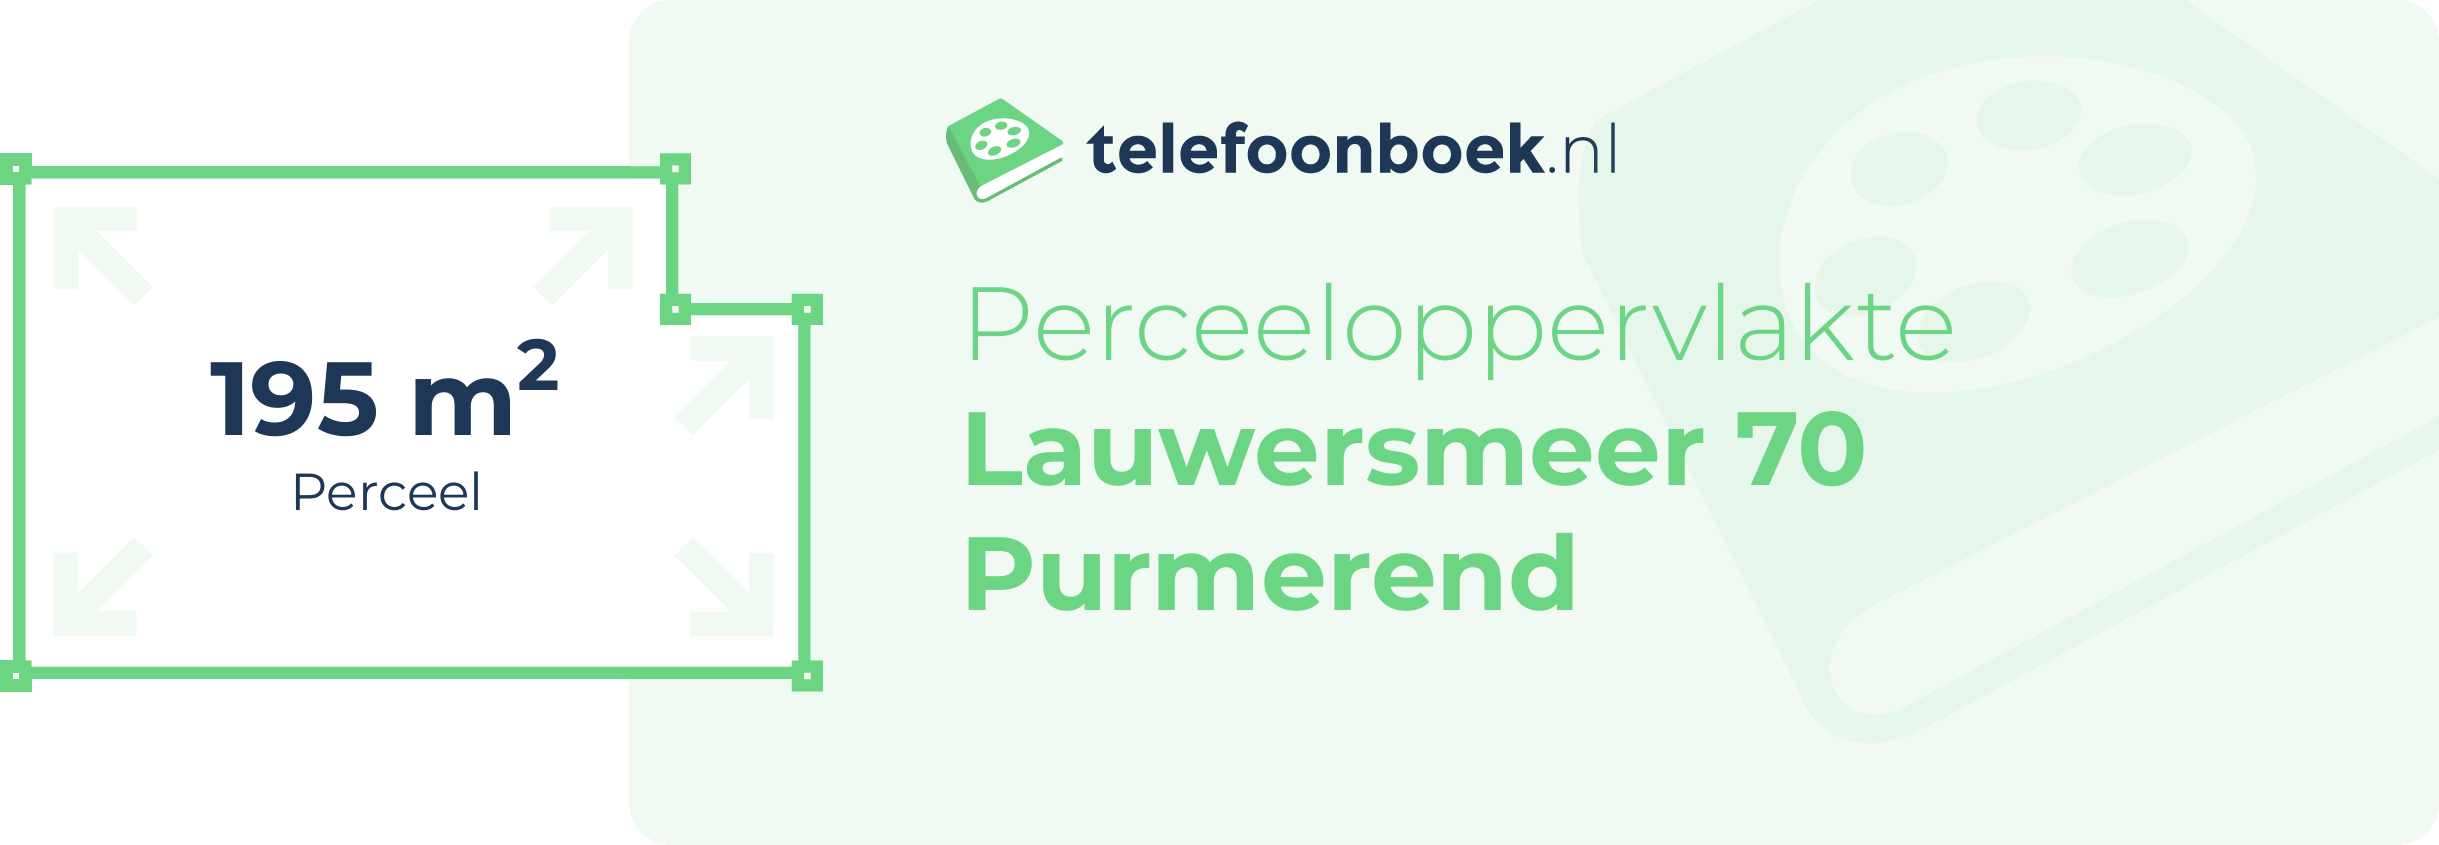 Perceeloppervlakte Lauwersmeer 70 Purmerend